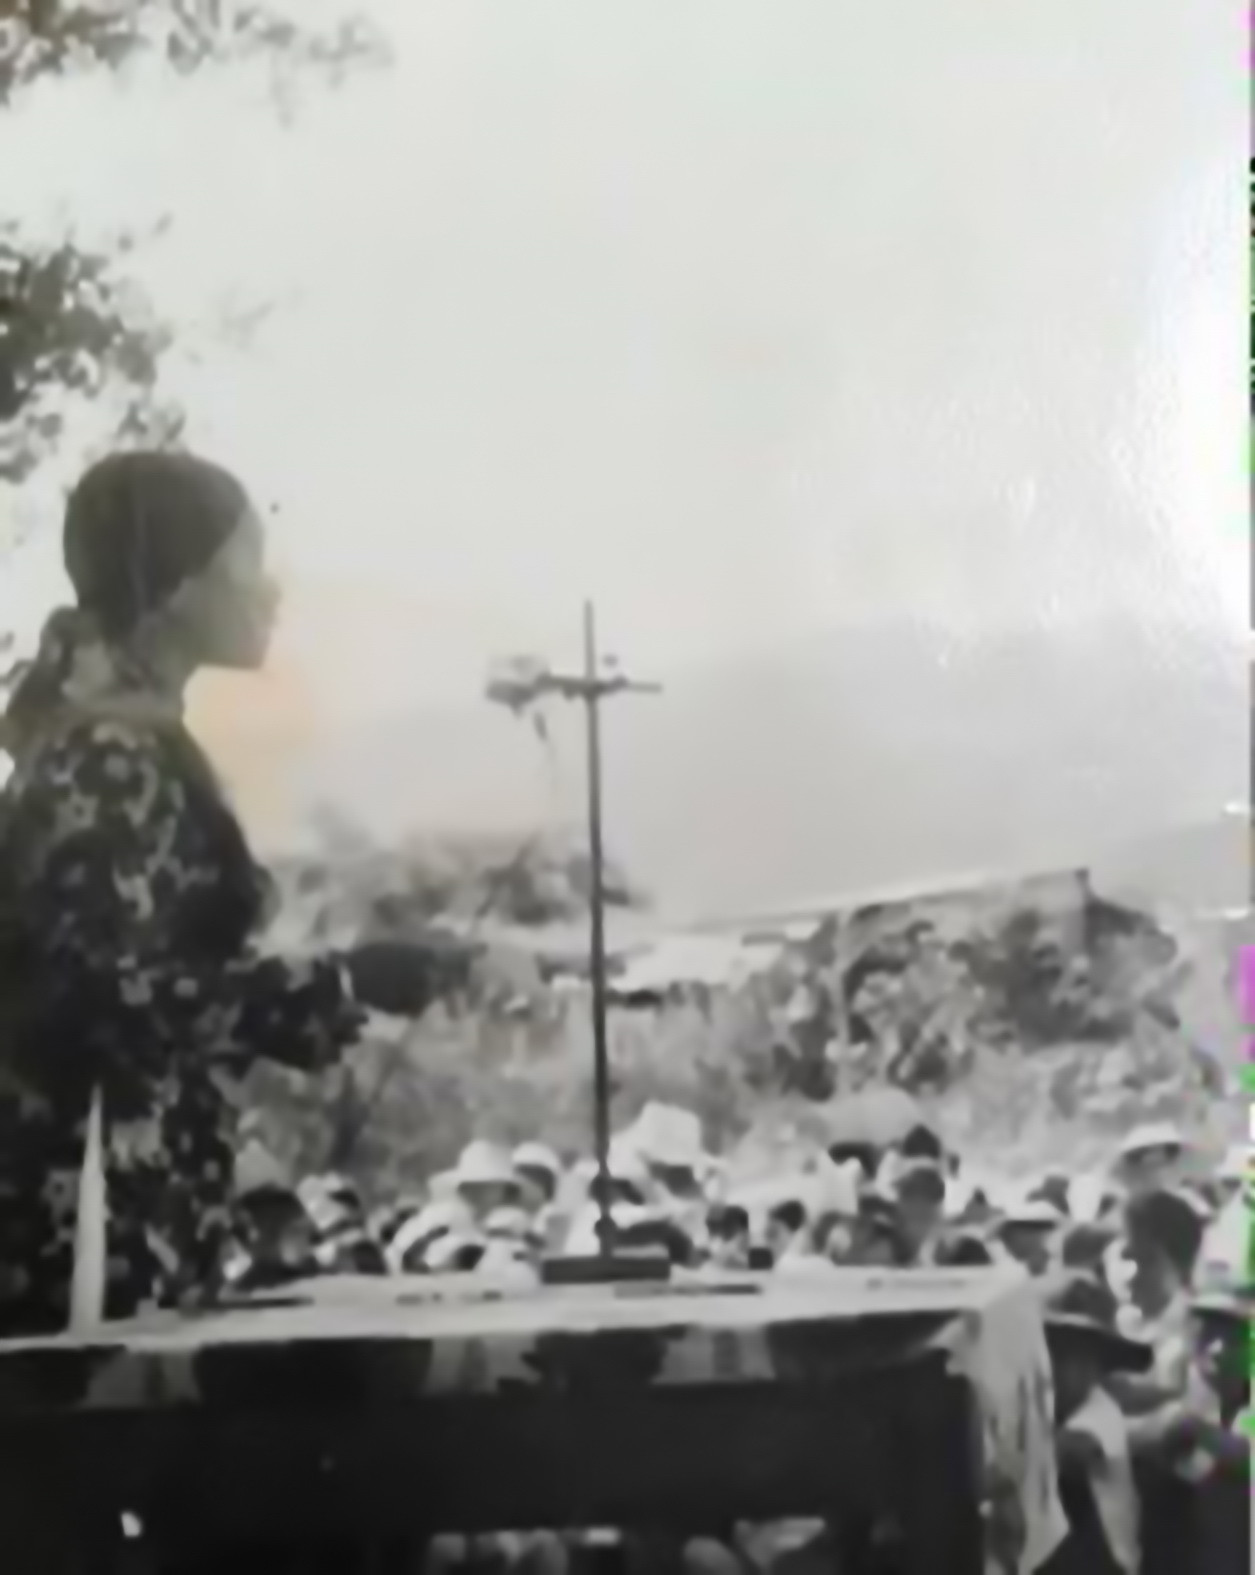 Ngày khai giảng đầu tiên 
của Trường Phổ thông cơ sở Ninh Ích, năm 1977.